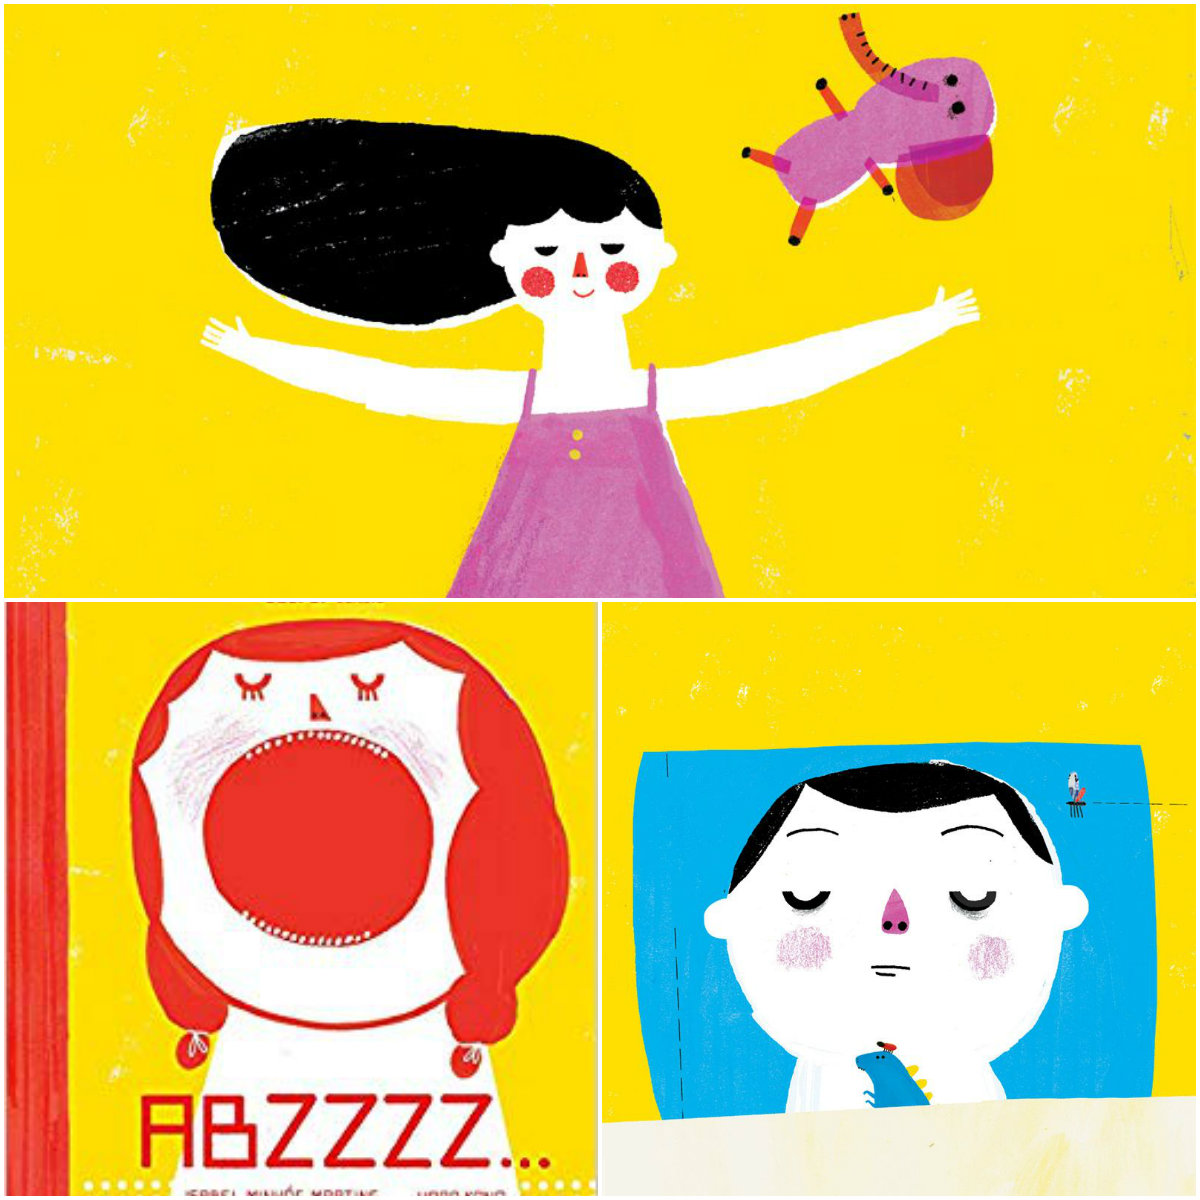 Ilustrações internas do livro "ABZZZZ..." mostram crianças dormindo e bocejando em um fundo amarelo.